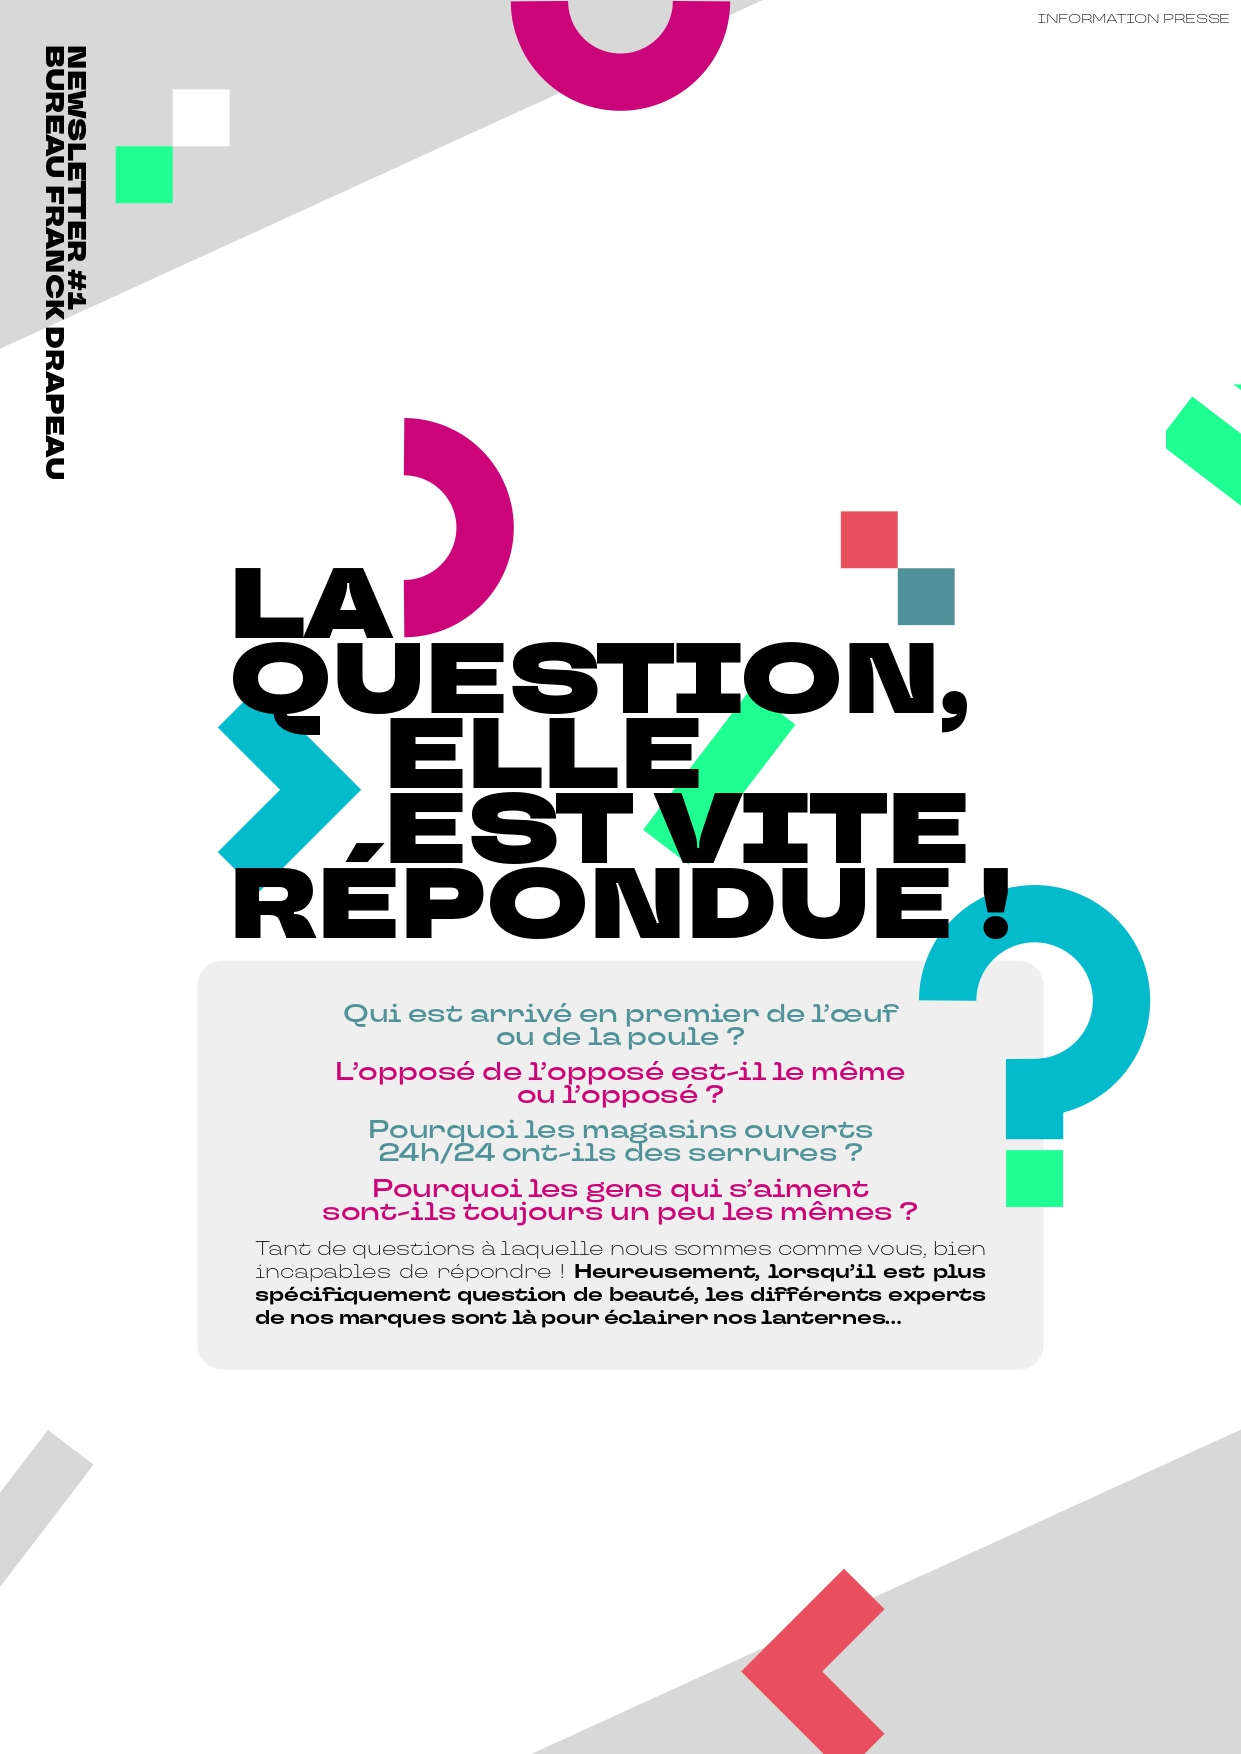 Newsletter | La Question Est Vite Répondue